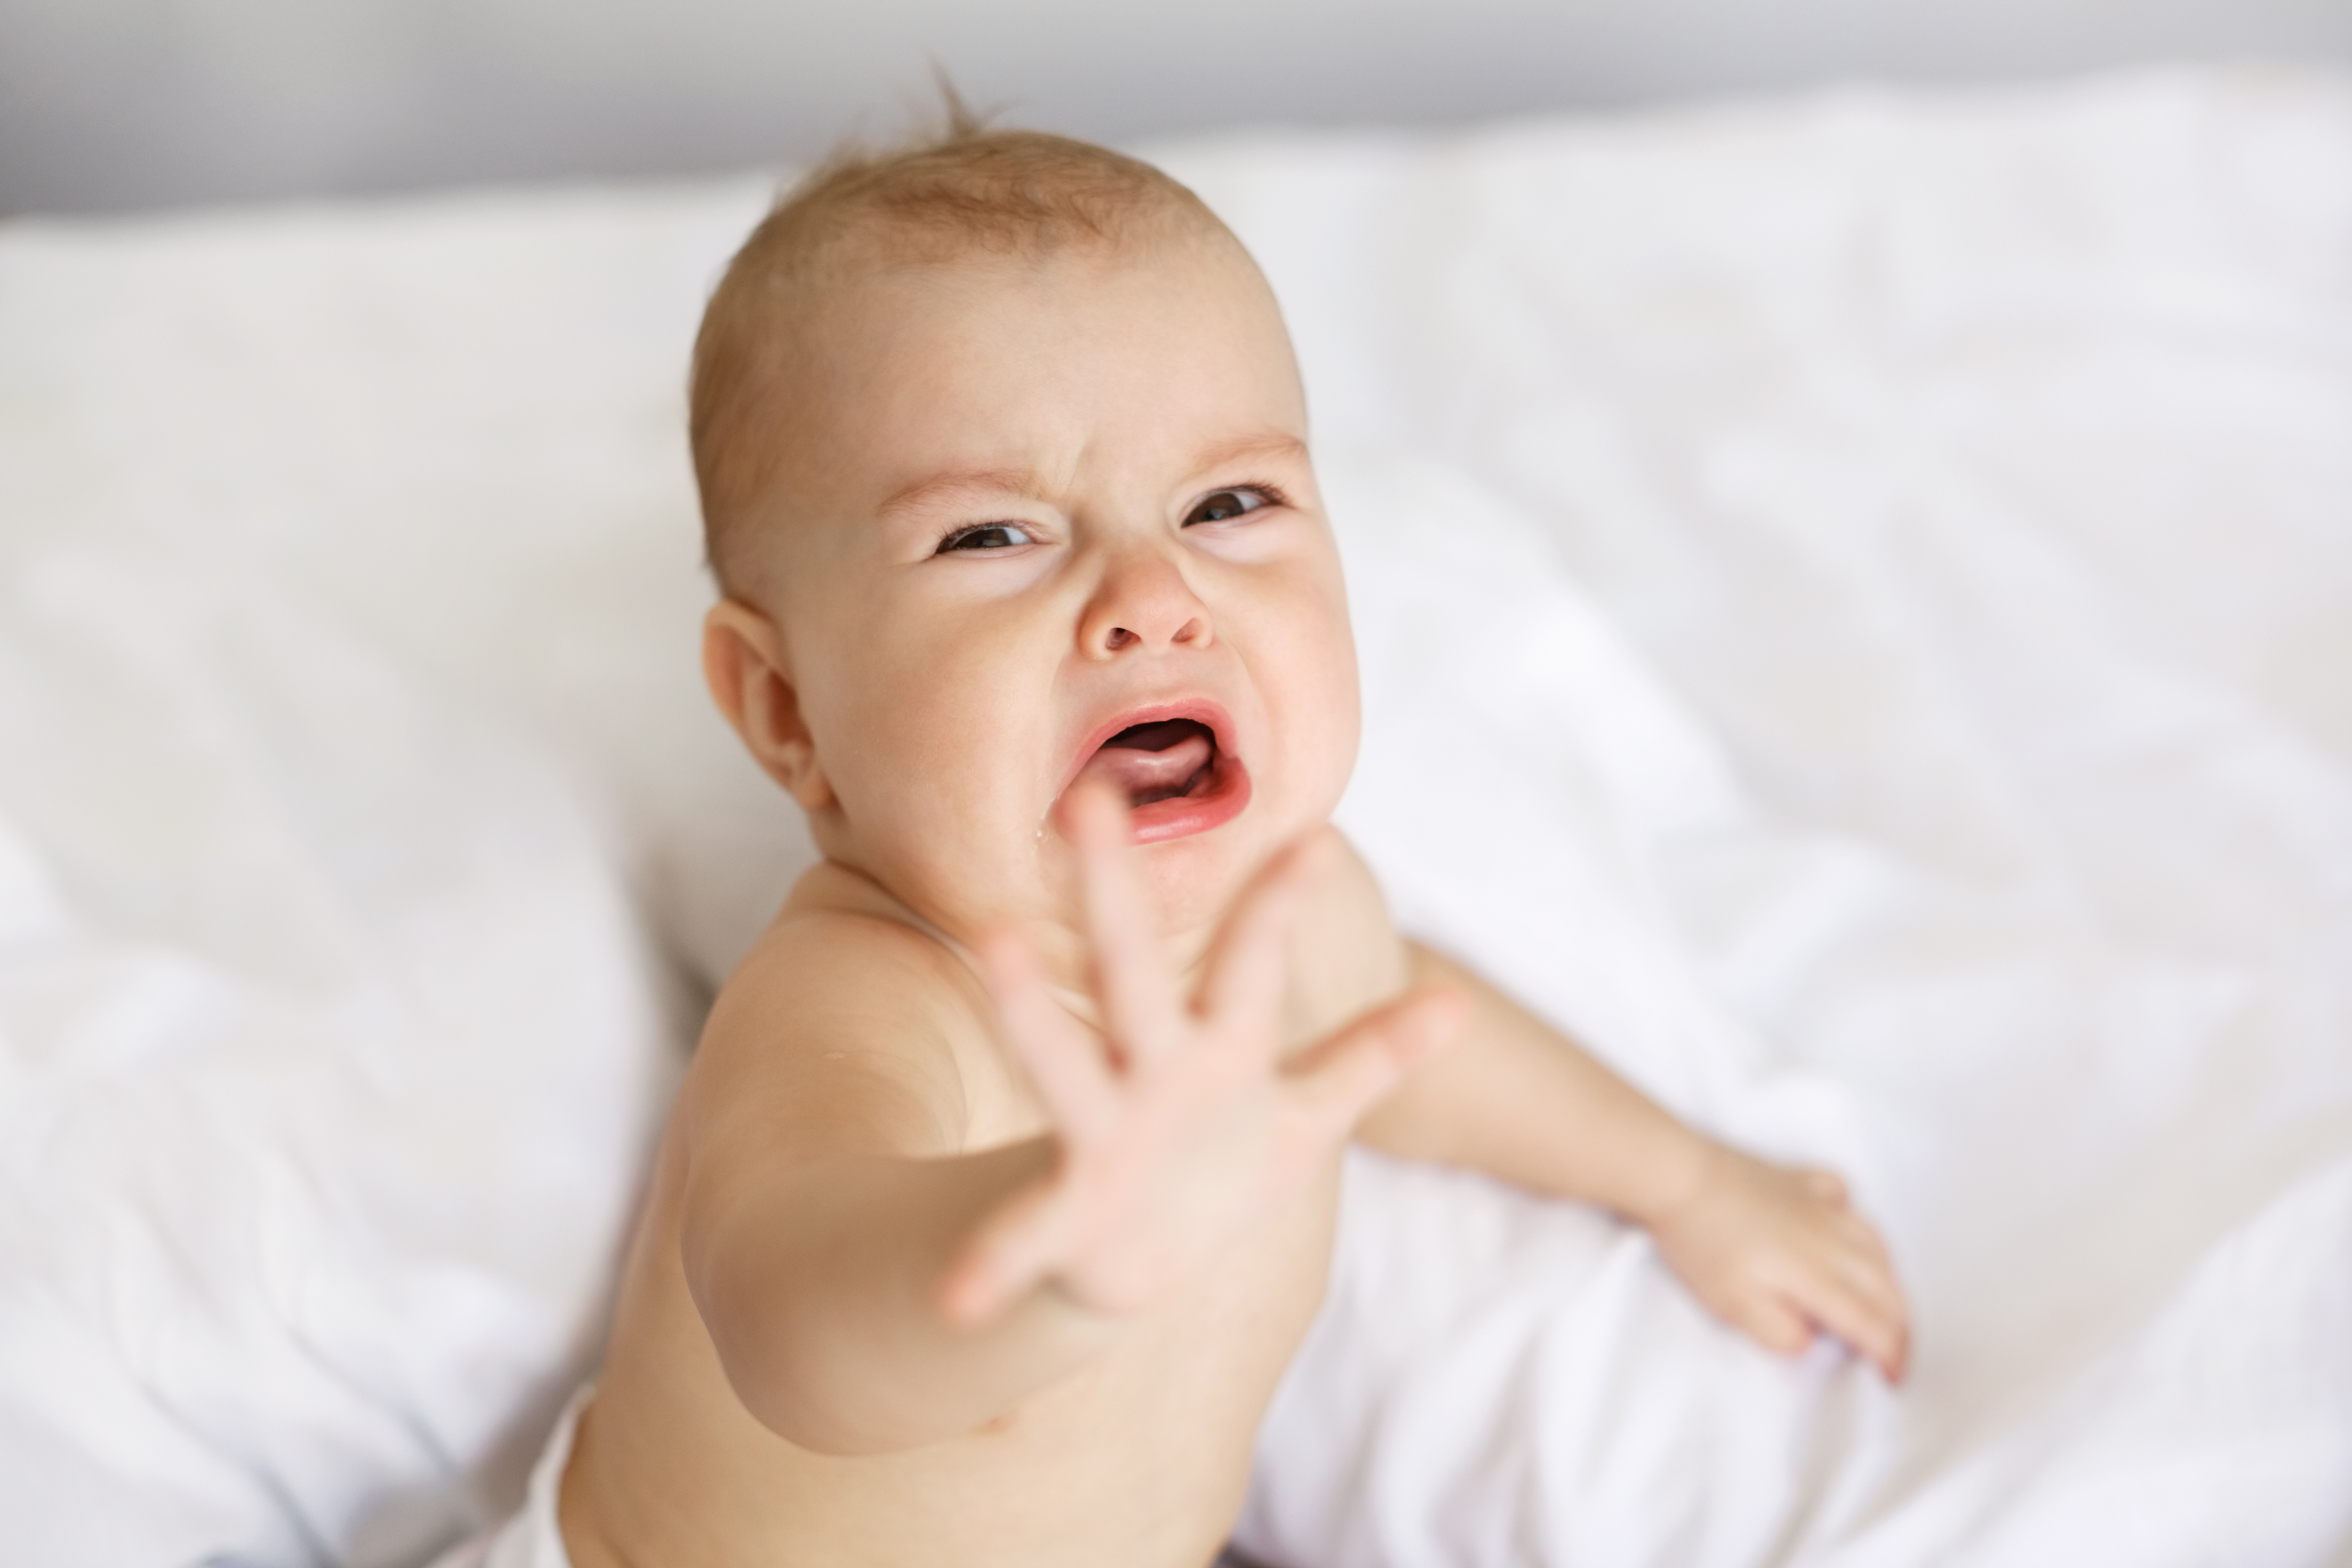 Bébé en pleurs tendant la main | Source : Shutterstock